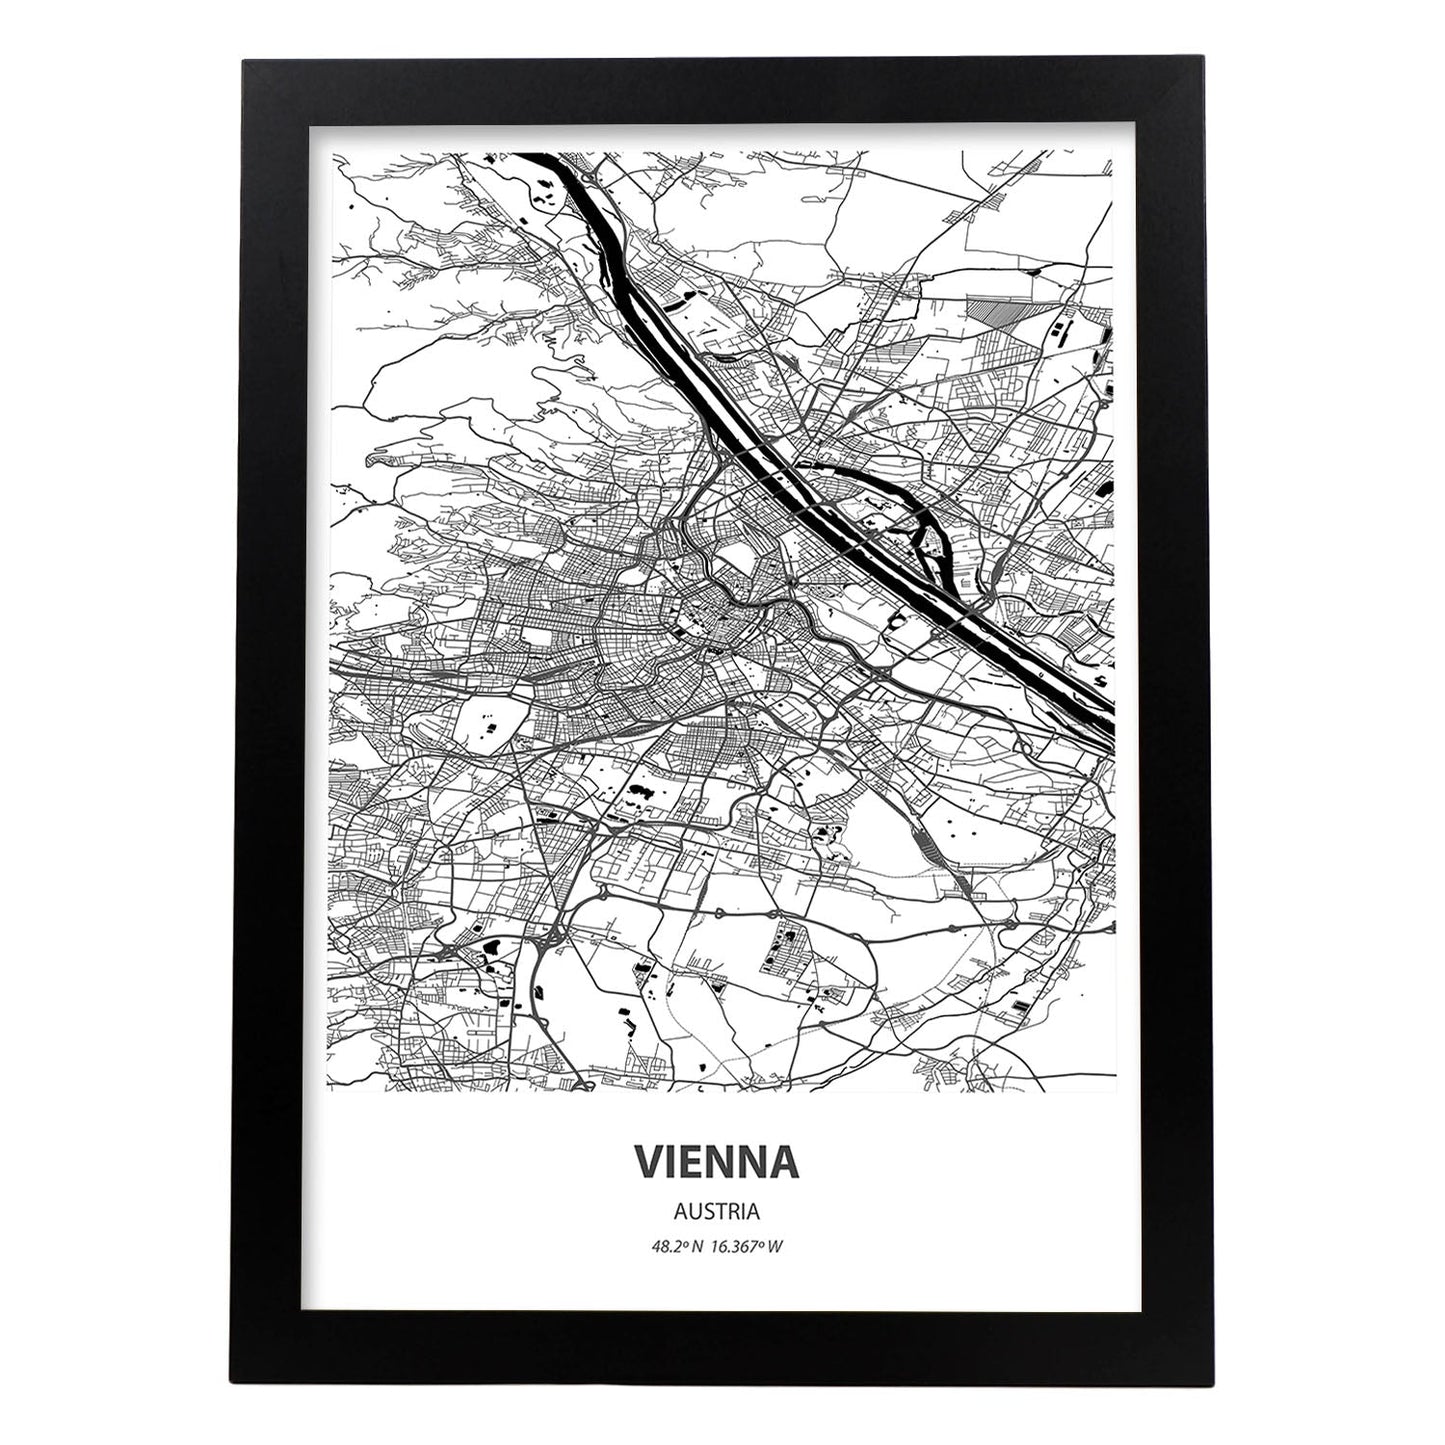 Poster con mapa de Vienna - Austria. Láminas de ciudades de Europa con mares y ríos en color negro.-Artwork-Nacnic-A3-Marco Negro-Nacnic Estudio SL